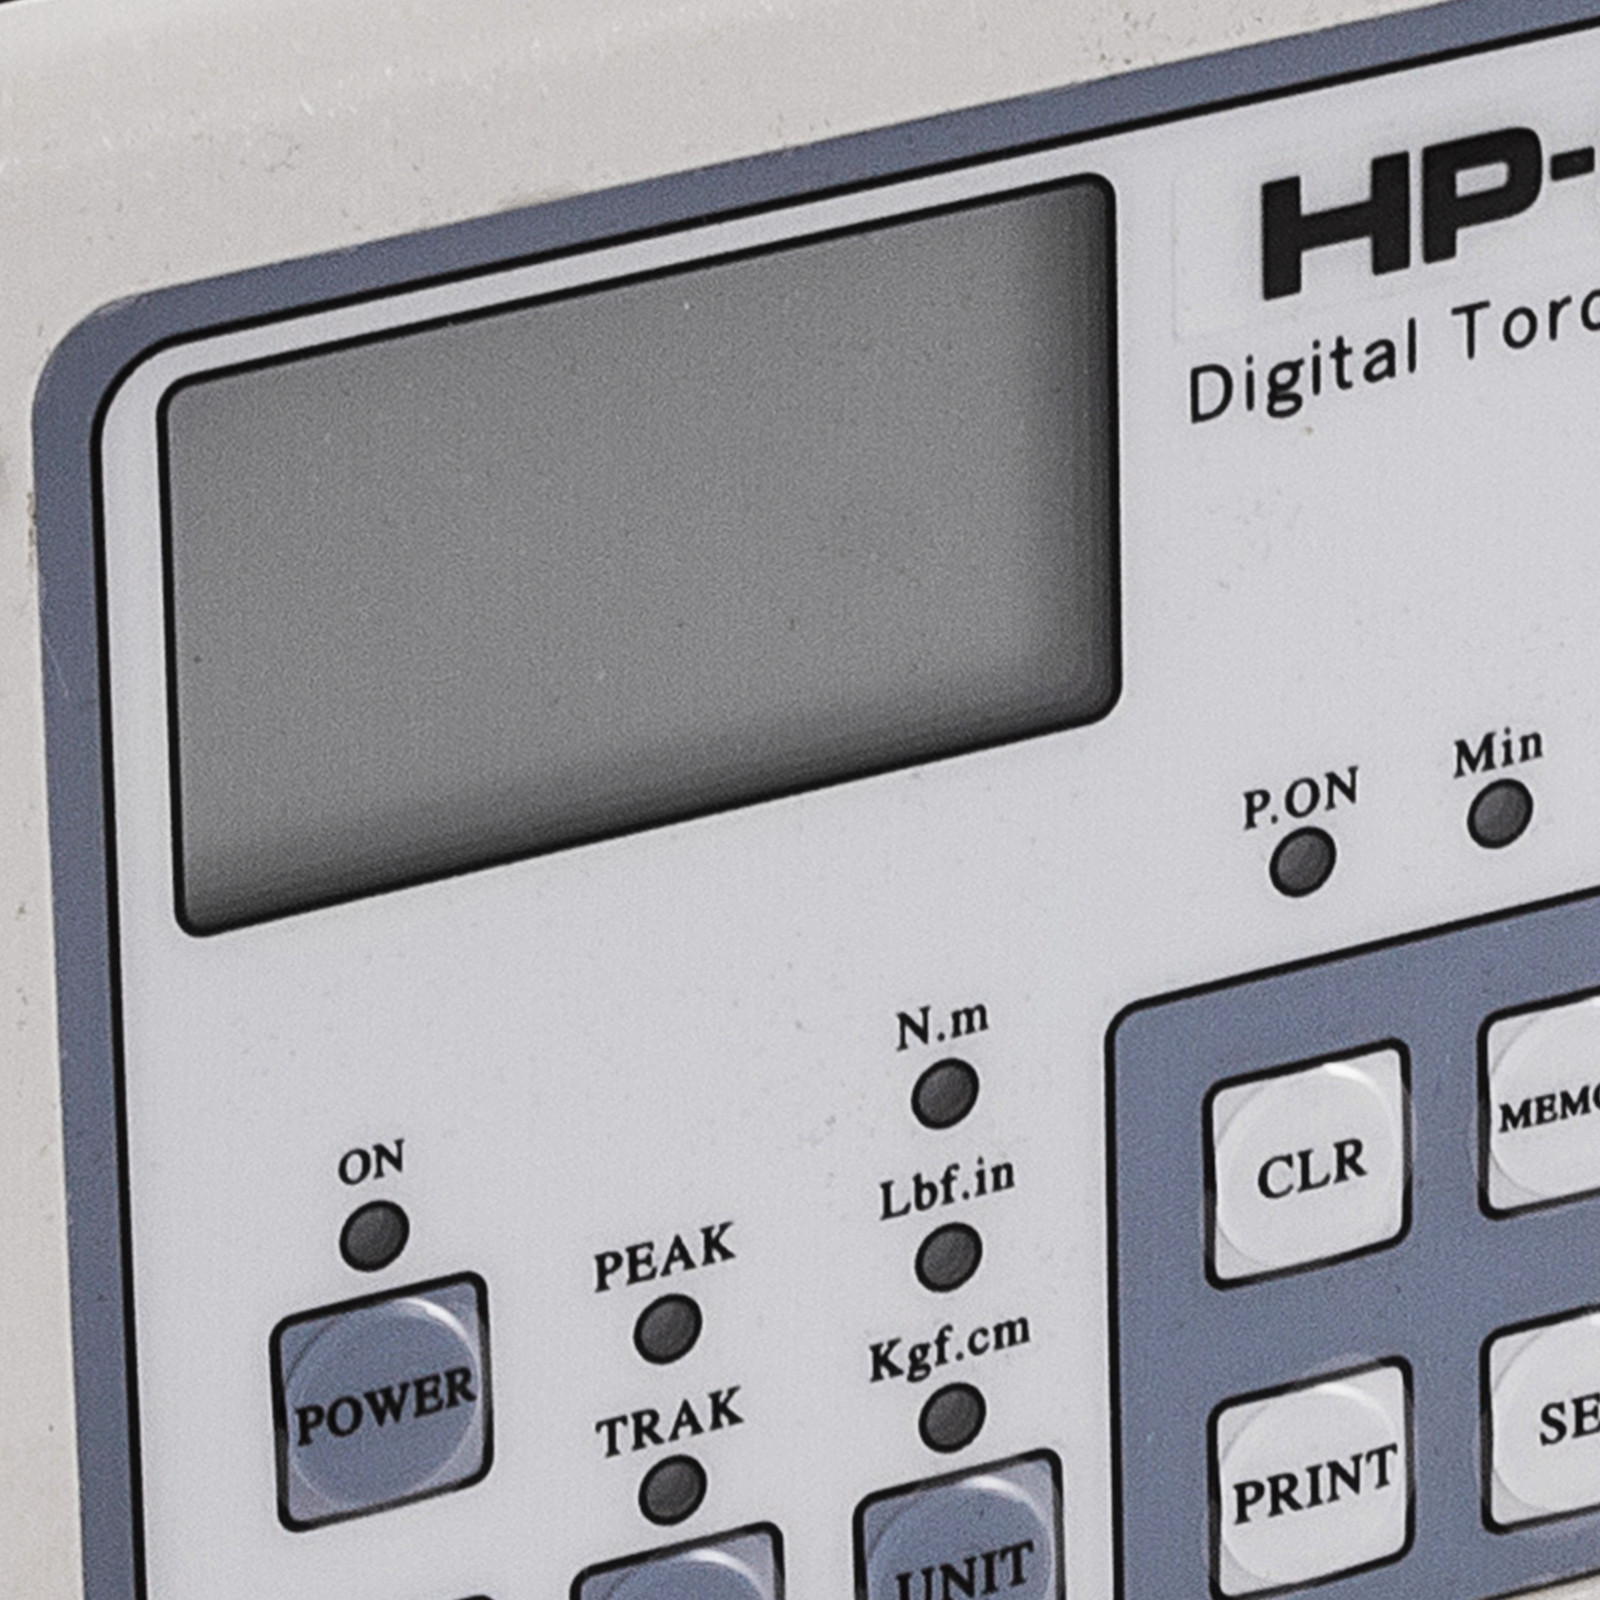 【送料無料】Huanyu Digital Torque Meter HP-100 Torque Gauge Portable Torsion Meter Scre